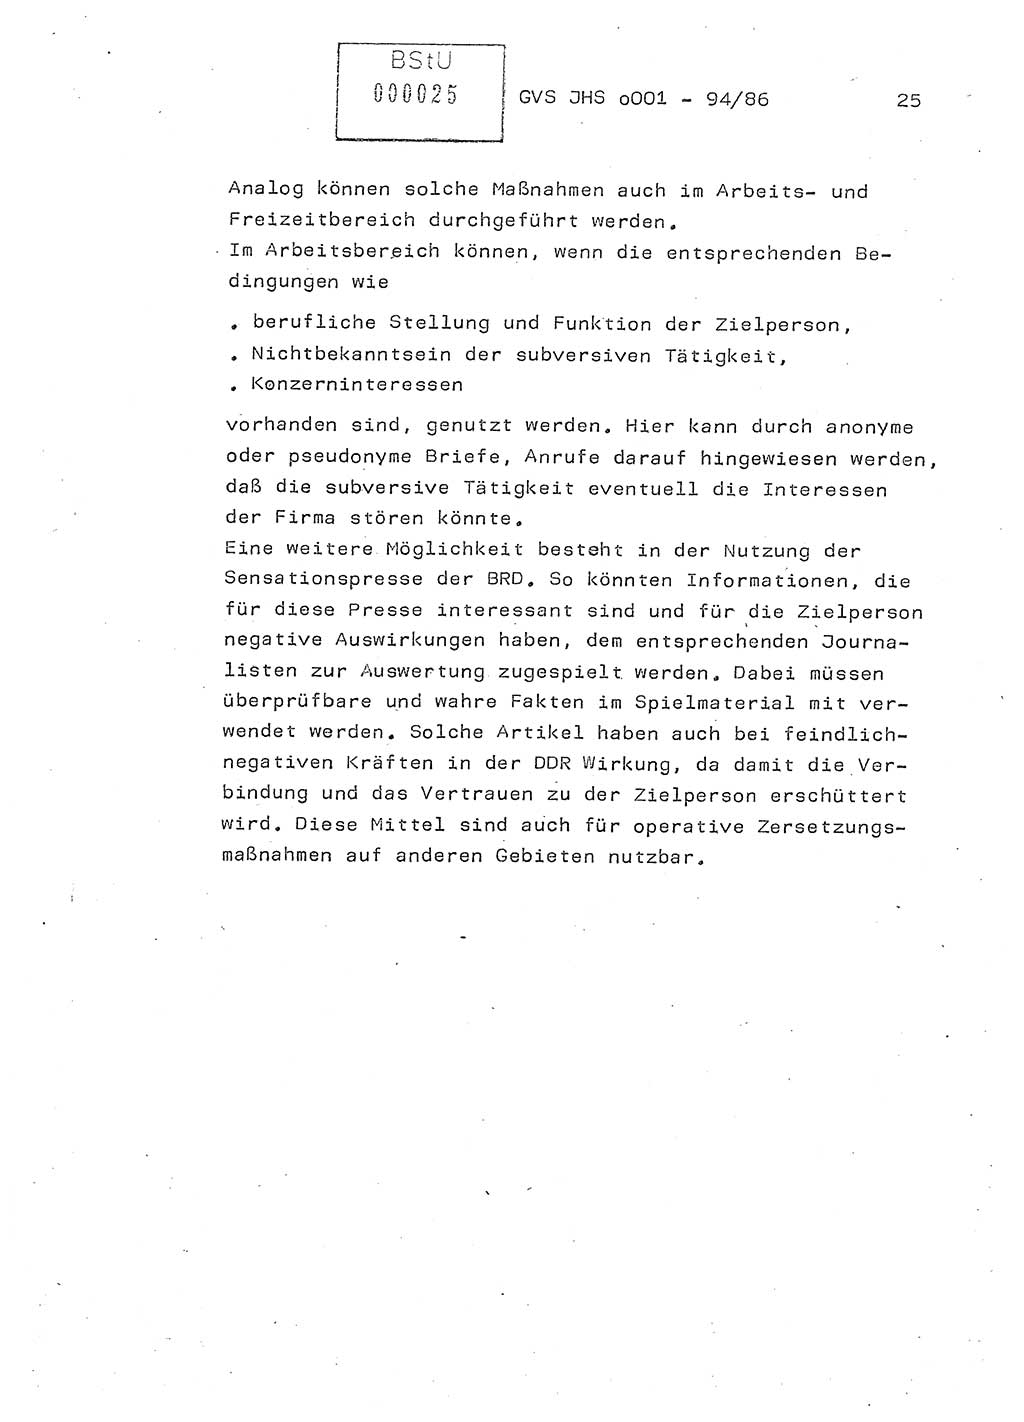 Diplomarbeit Oberleutnant Volkmar Pechmann (HA ⅩⅩ/5), Ministerium für Staatssicherheit (MfS) [Deutsche Demokratische Republik (DDR)], Juristische Hochschule (JHS), Geheime Verschlußsache (GVS) o001-94/86, Potsdam 1986, Blatt 25 (Dipl.-Arb. MfS DDR JHS GVS o001-94/86 1986, Bl. 25)